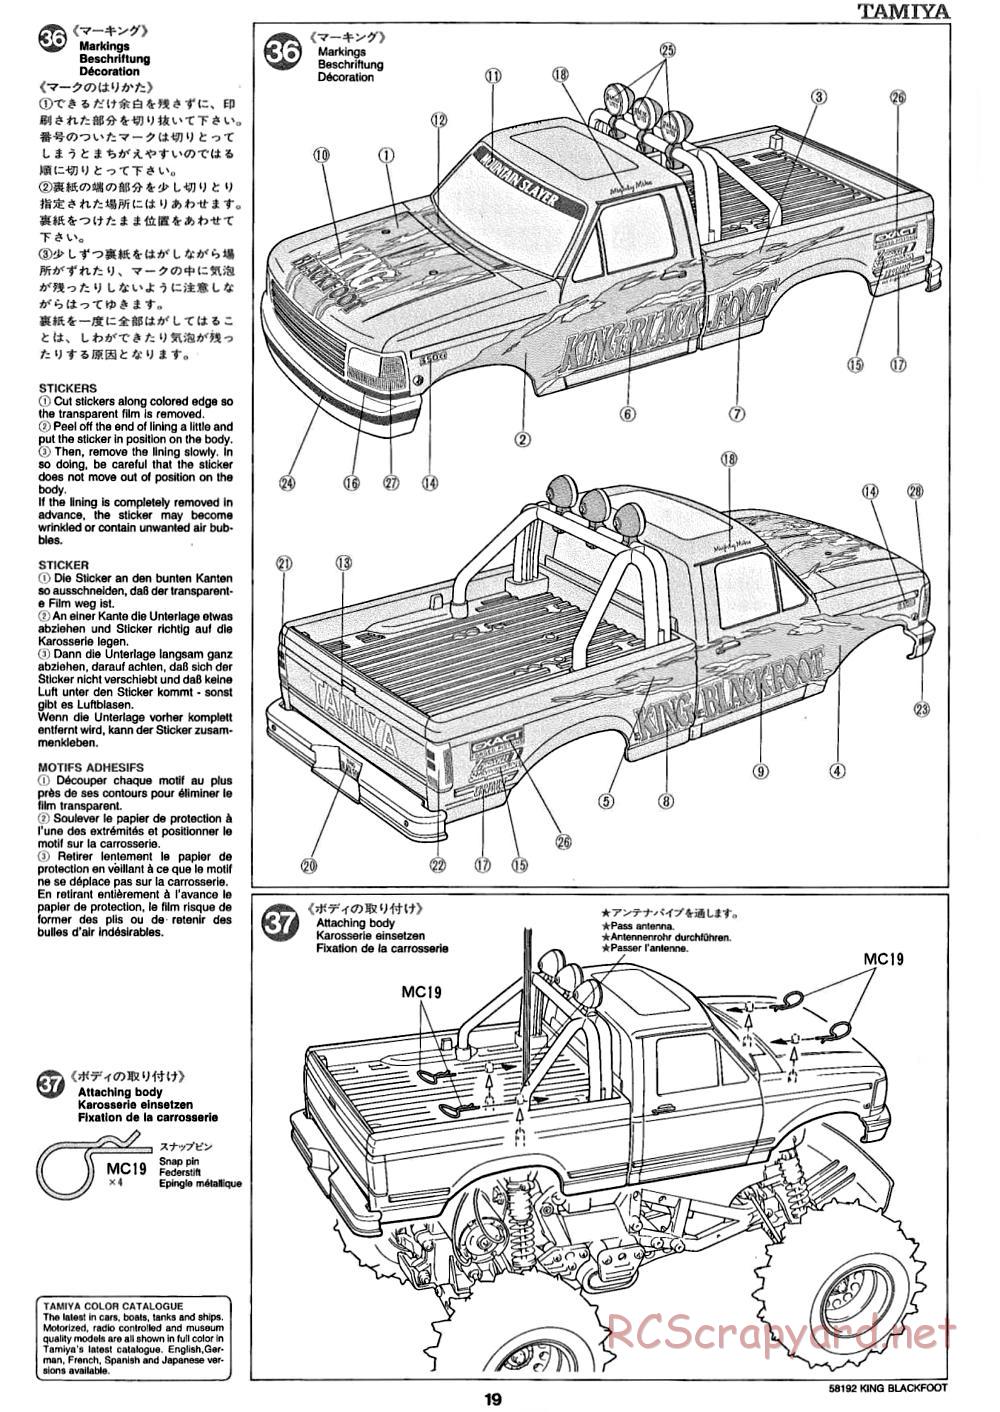 Tamiya - King Blackfoot Chassis - Manual - Page 19